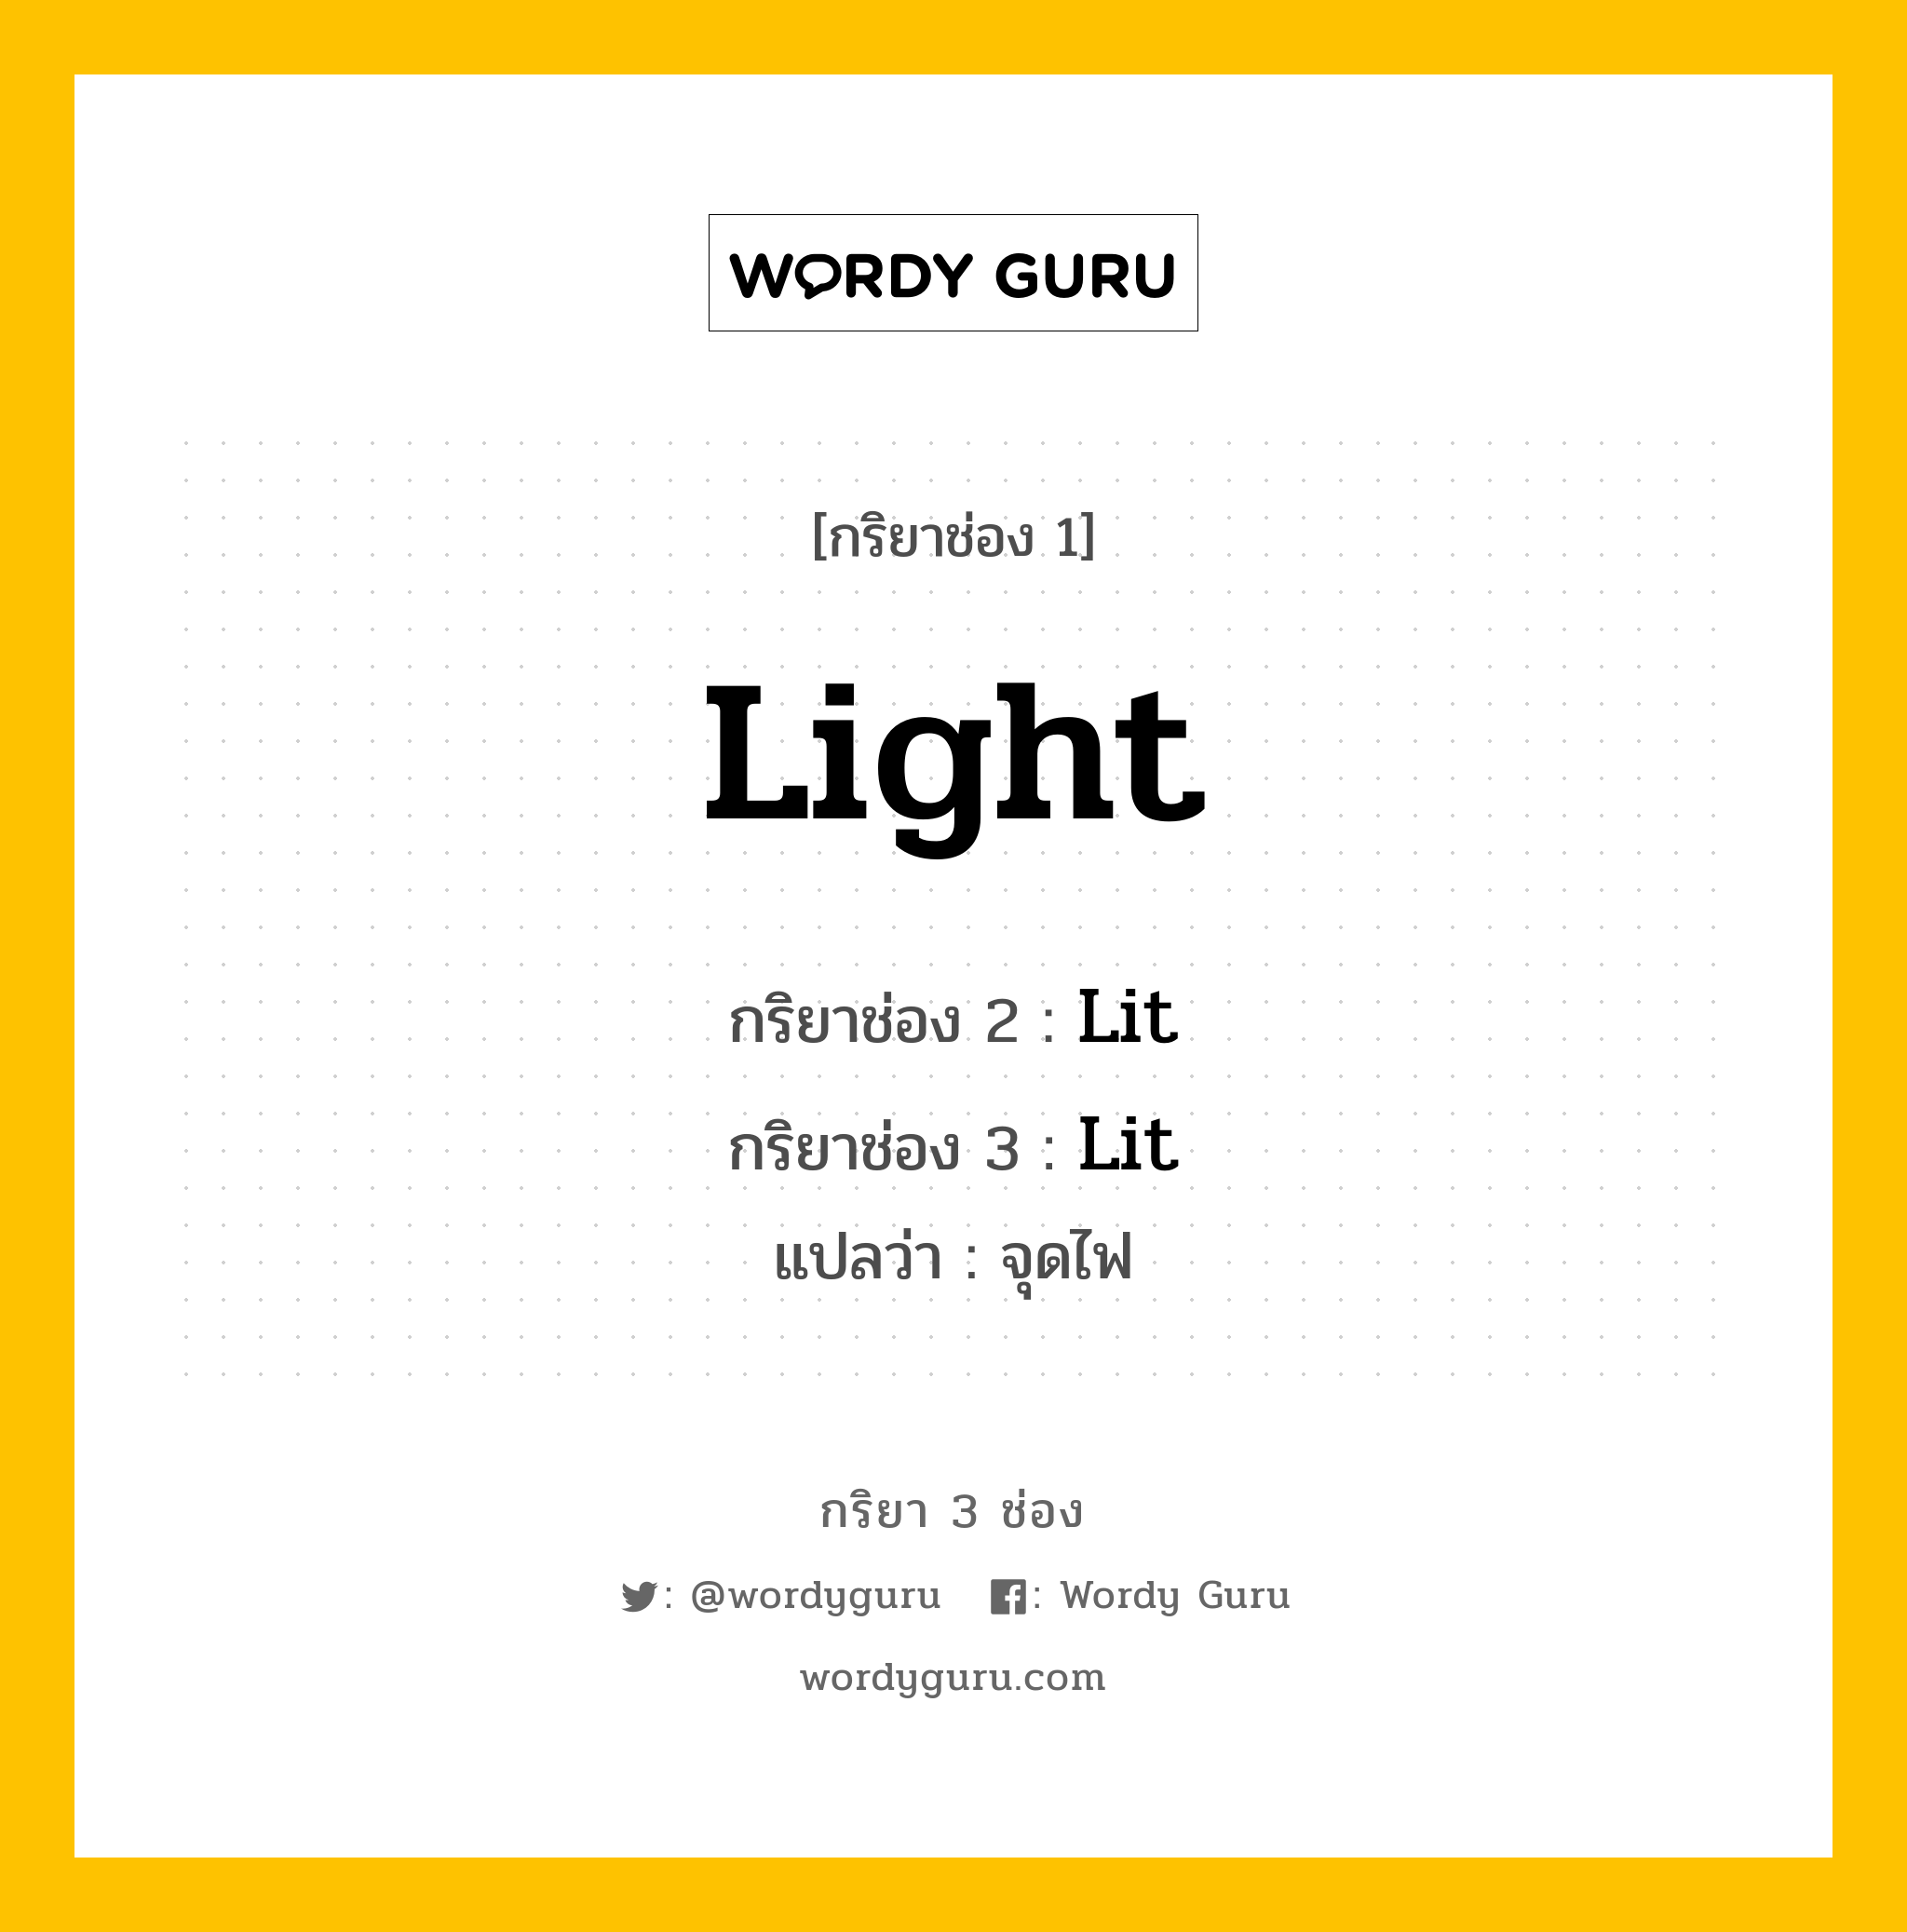 กริยา 3 ช่อง: Light ช่อง 2 Light ช่อง 3 คืออะไร, กริยาช่อง 1 Light กริยาช่อง 2 Lit กริยาช่อง 3 Lit แปลว่า จุดไฟ มีหลายแบบ y หมวด Irregular Verb